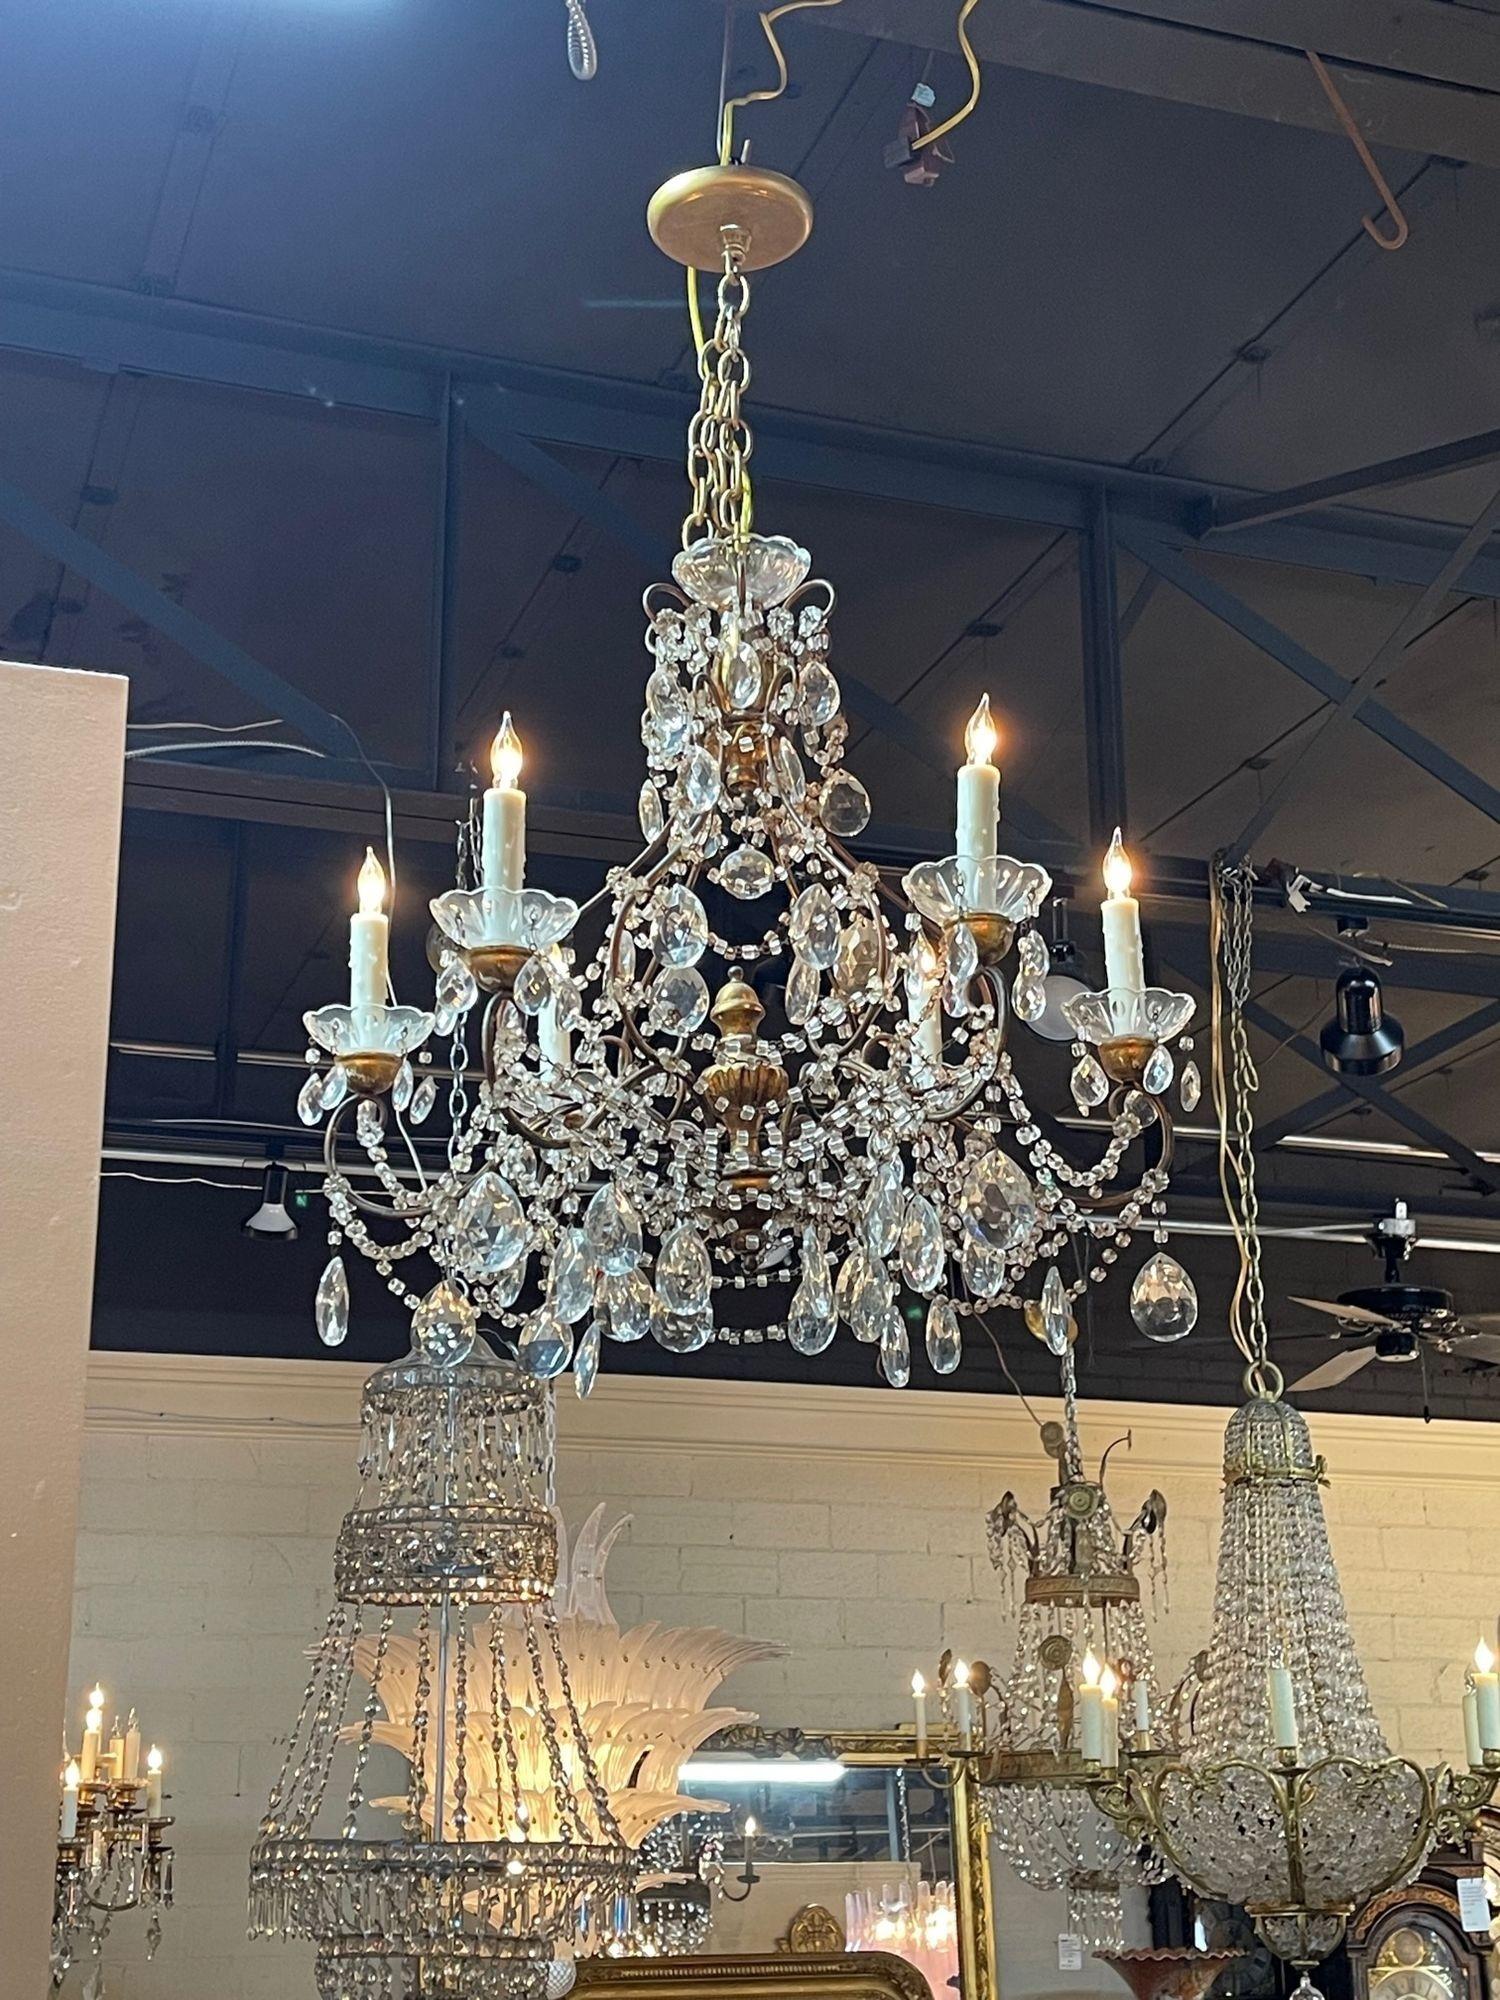 Elégant lustre italien vintage en cristal perlé et bois doré à 6 lumières. Avec de magnifiques cristaux et perles drapés. Une qualité très fine ! Charmant !